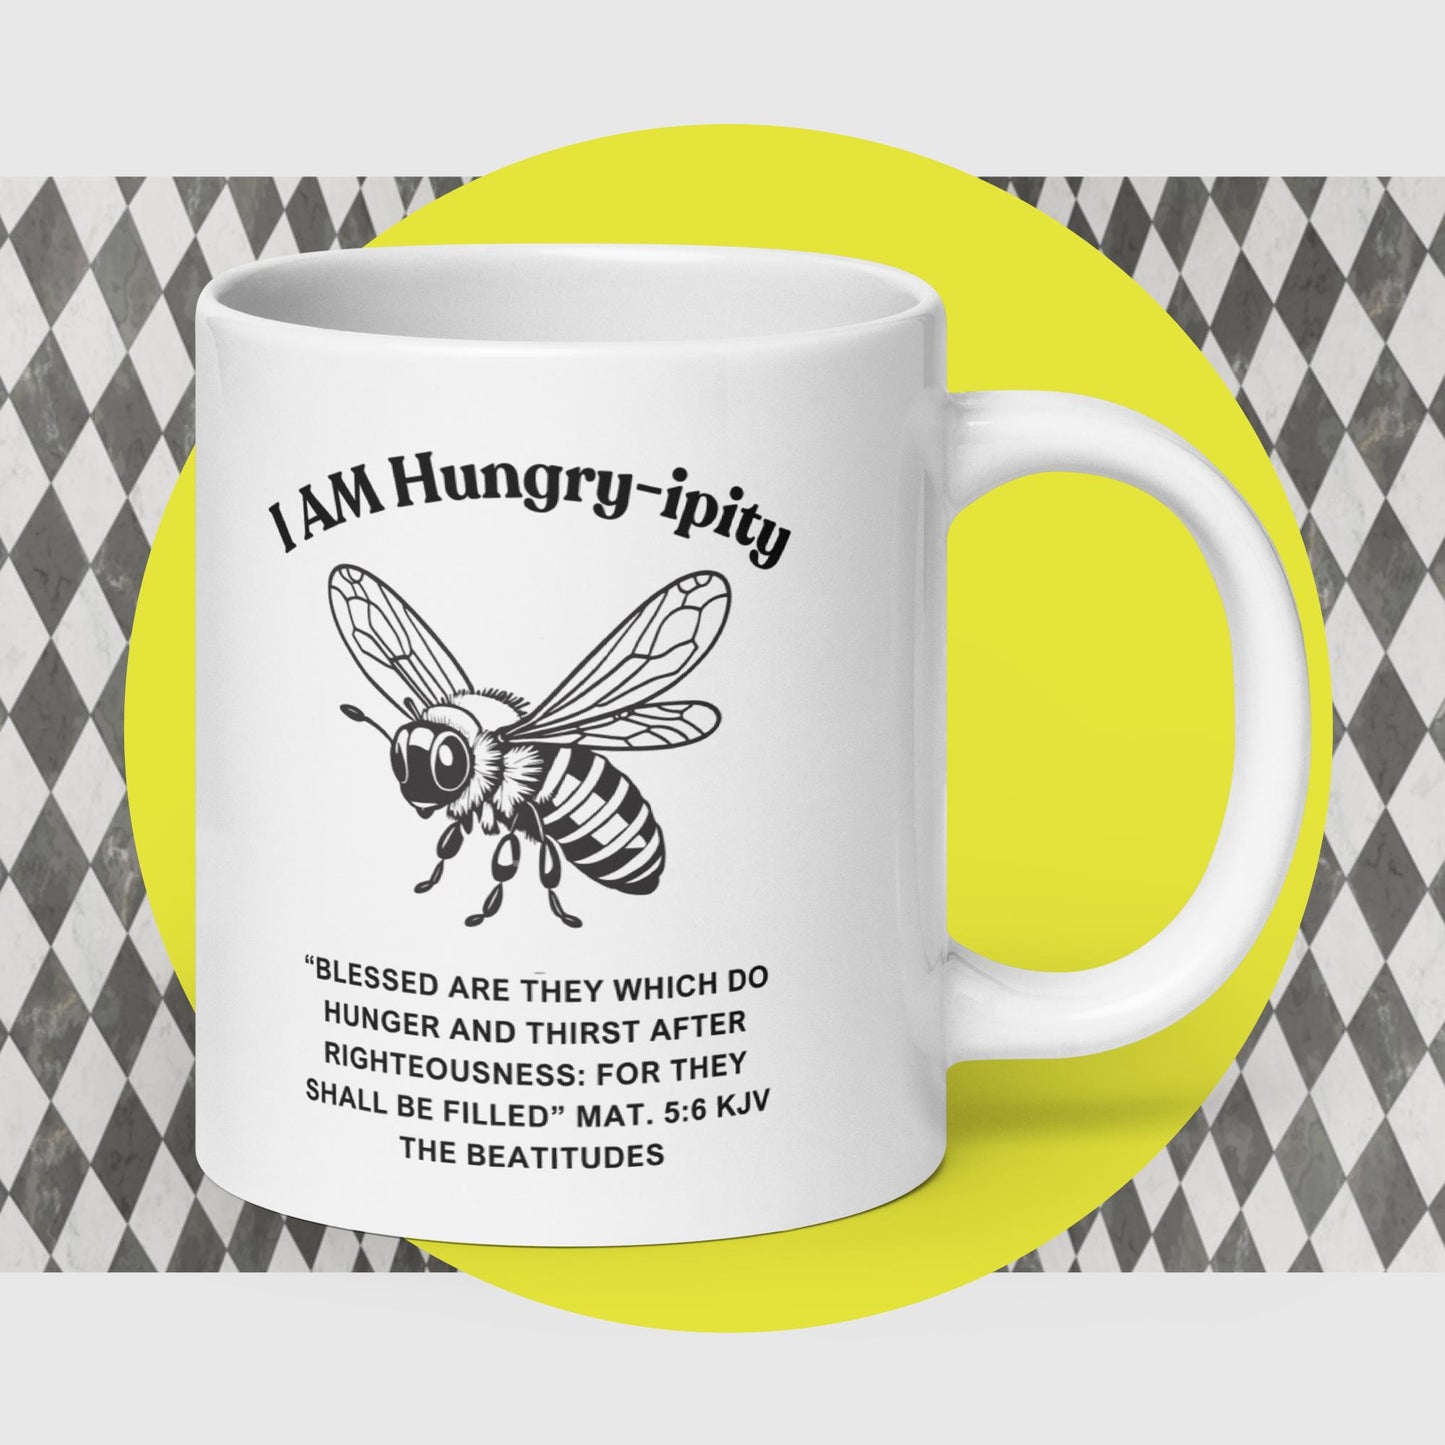 "I AM Hungry-ipity" Coffee Mug B/W